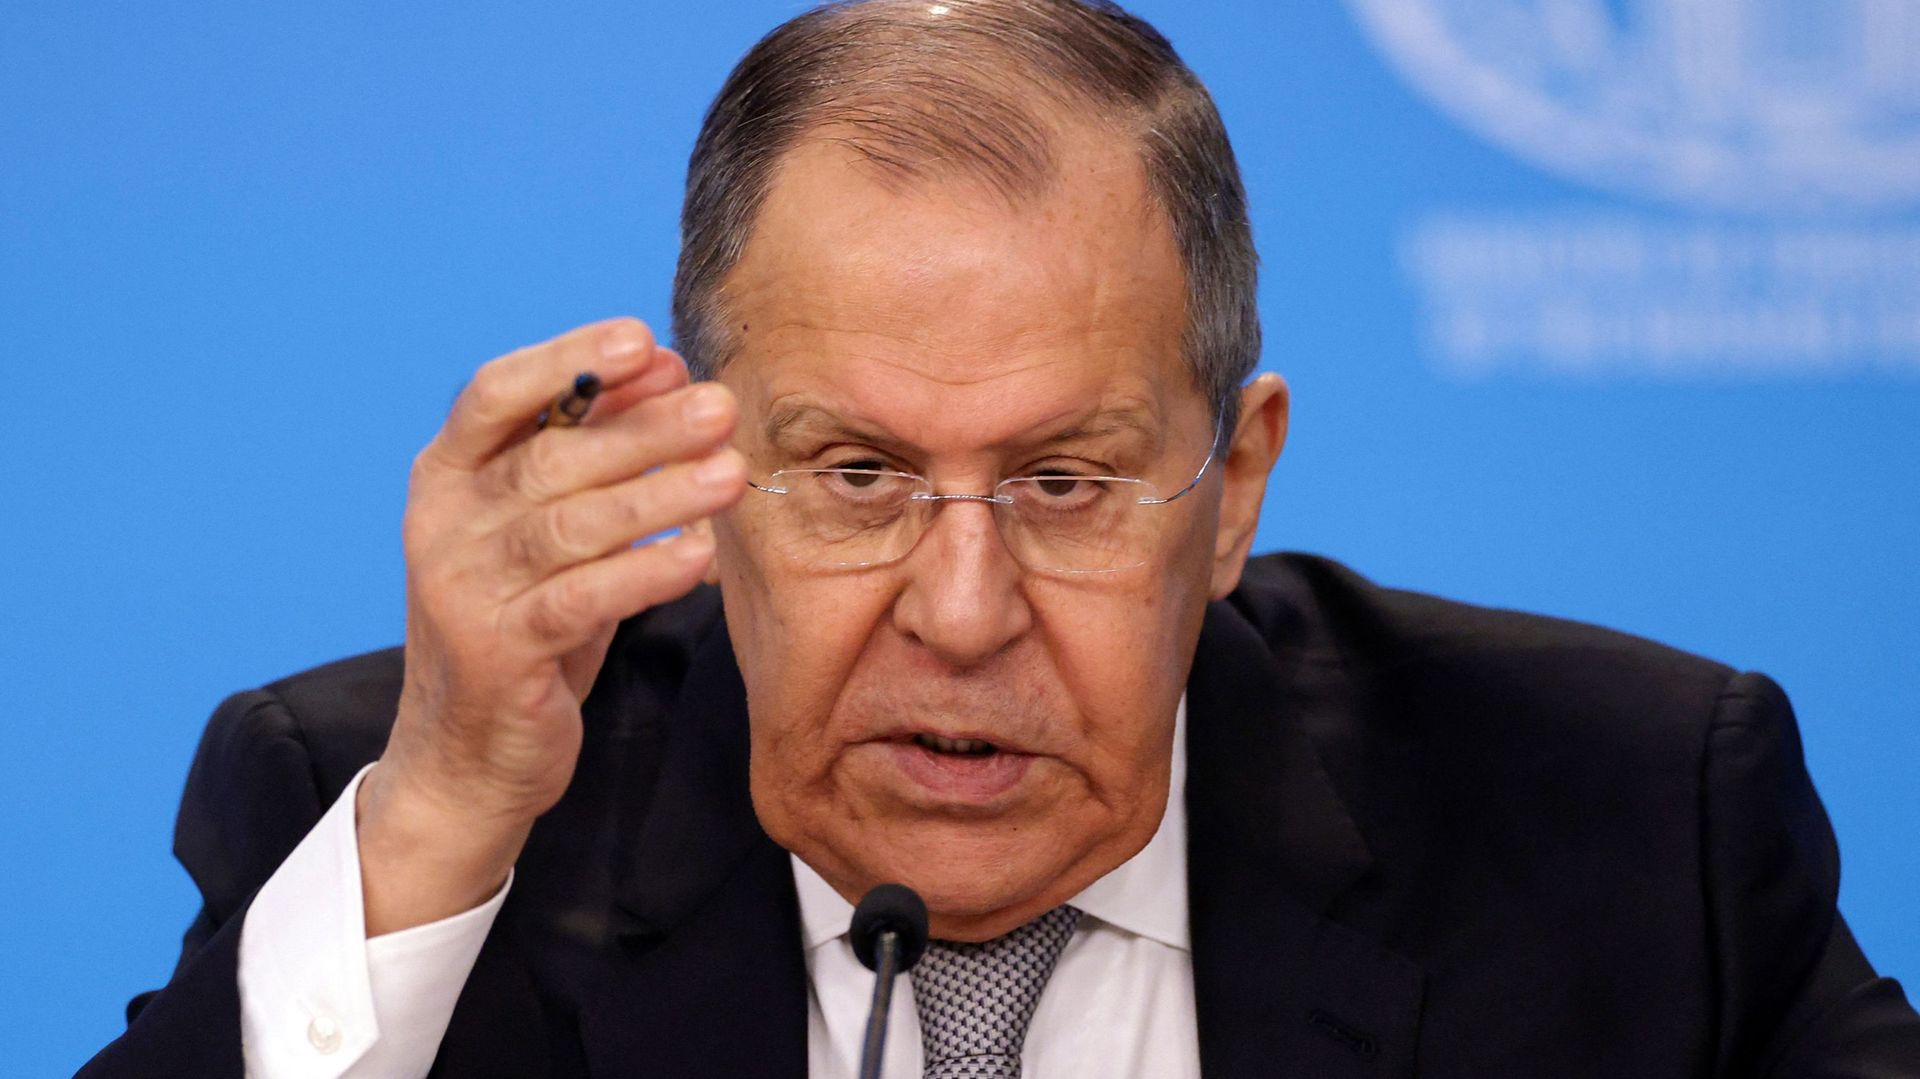 Le chef de la diplomatie russe Sergueï Lavrov espère de nouvelles discussions avec les Etats-Unis à certaines conditions.